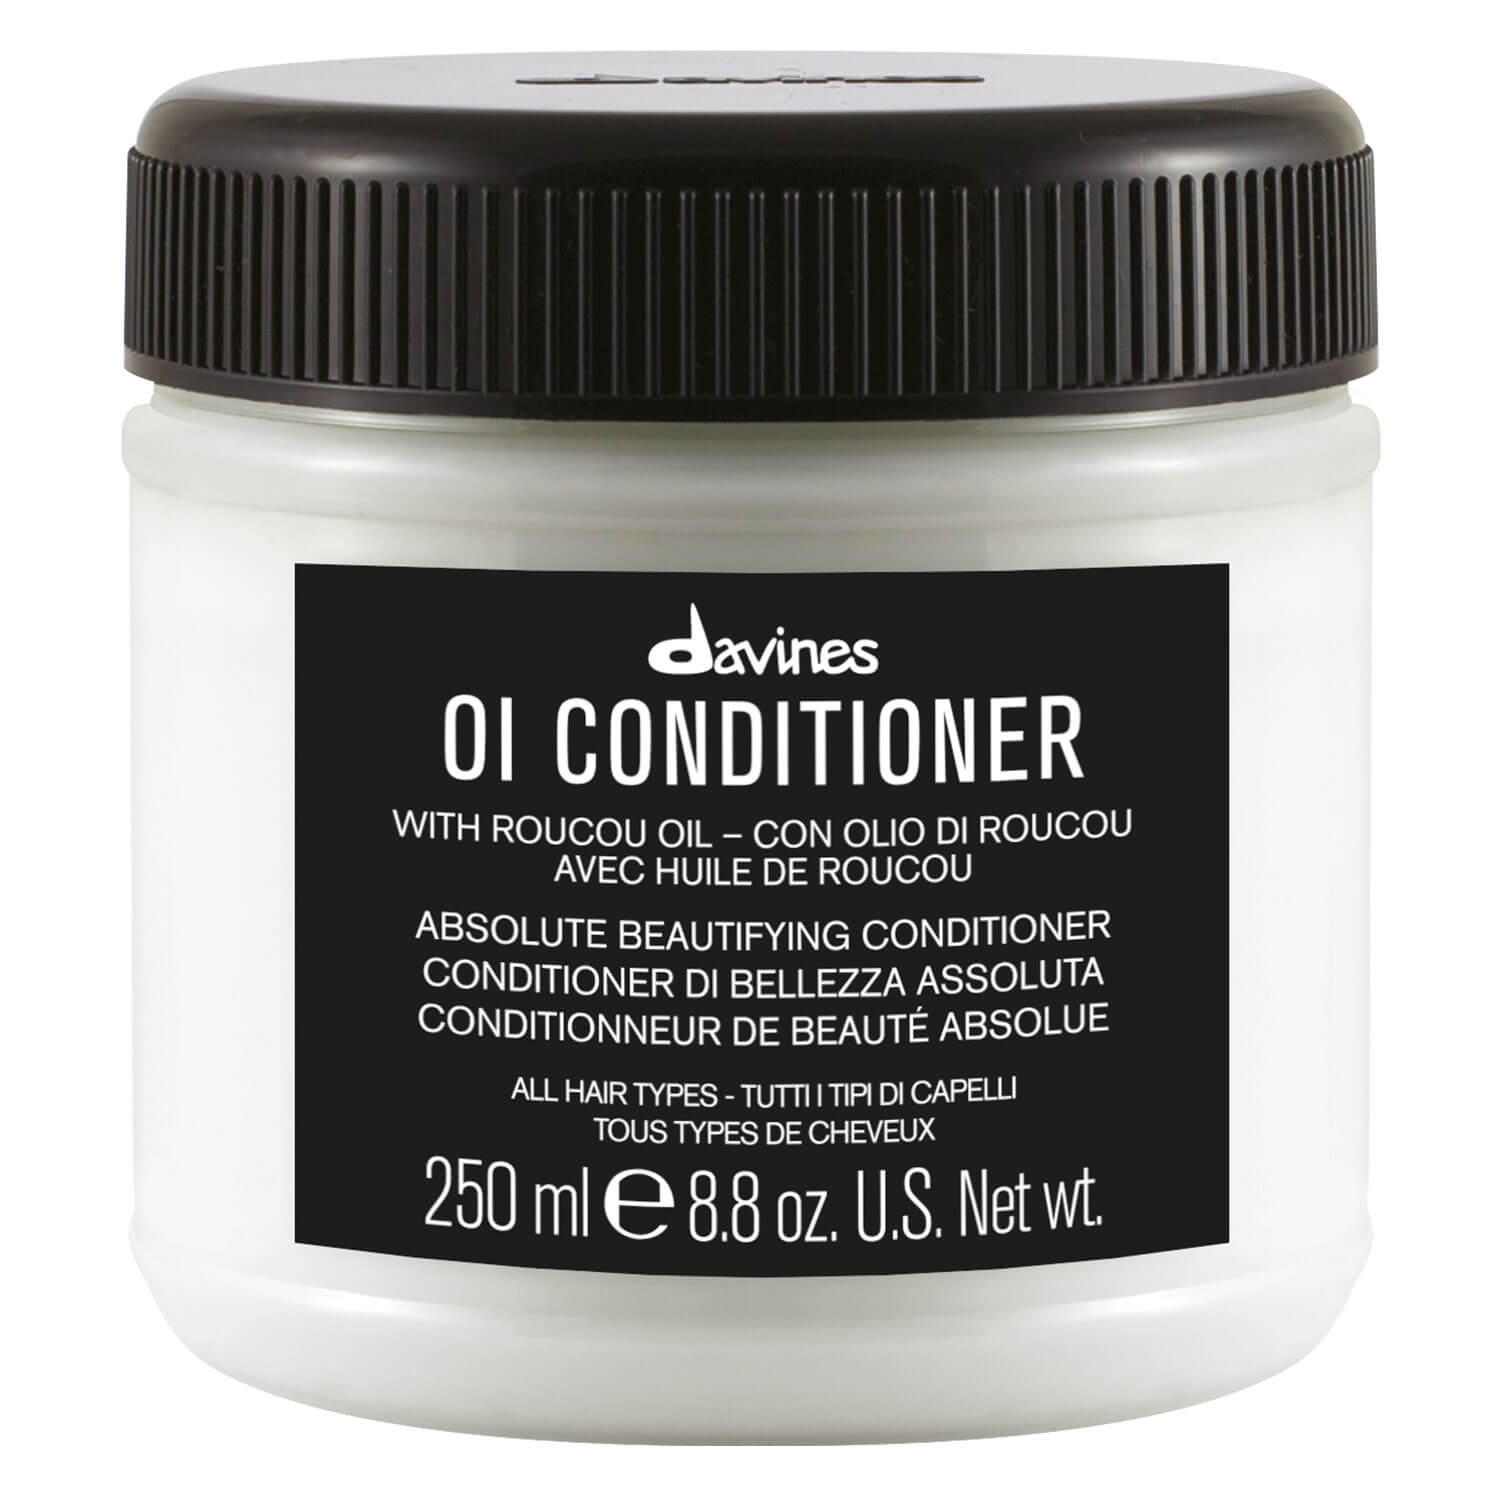 Produktbild von Oi - Absolute Beautifying Conditioner